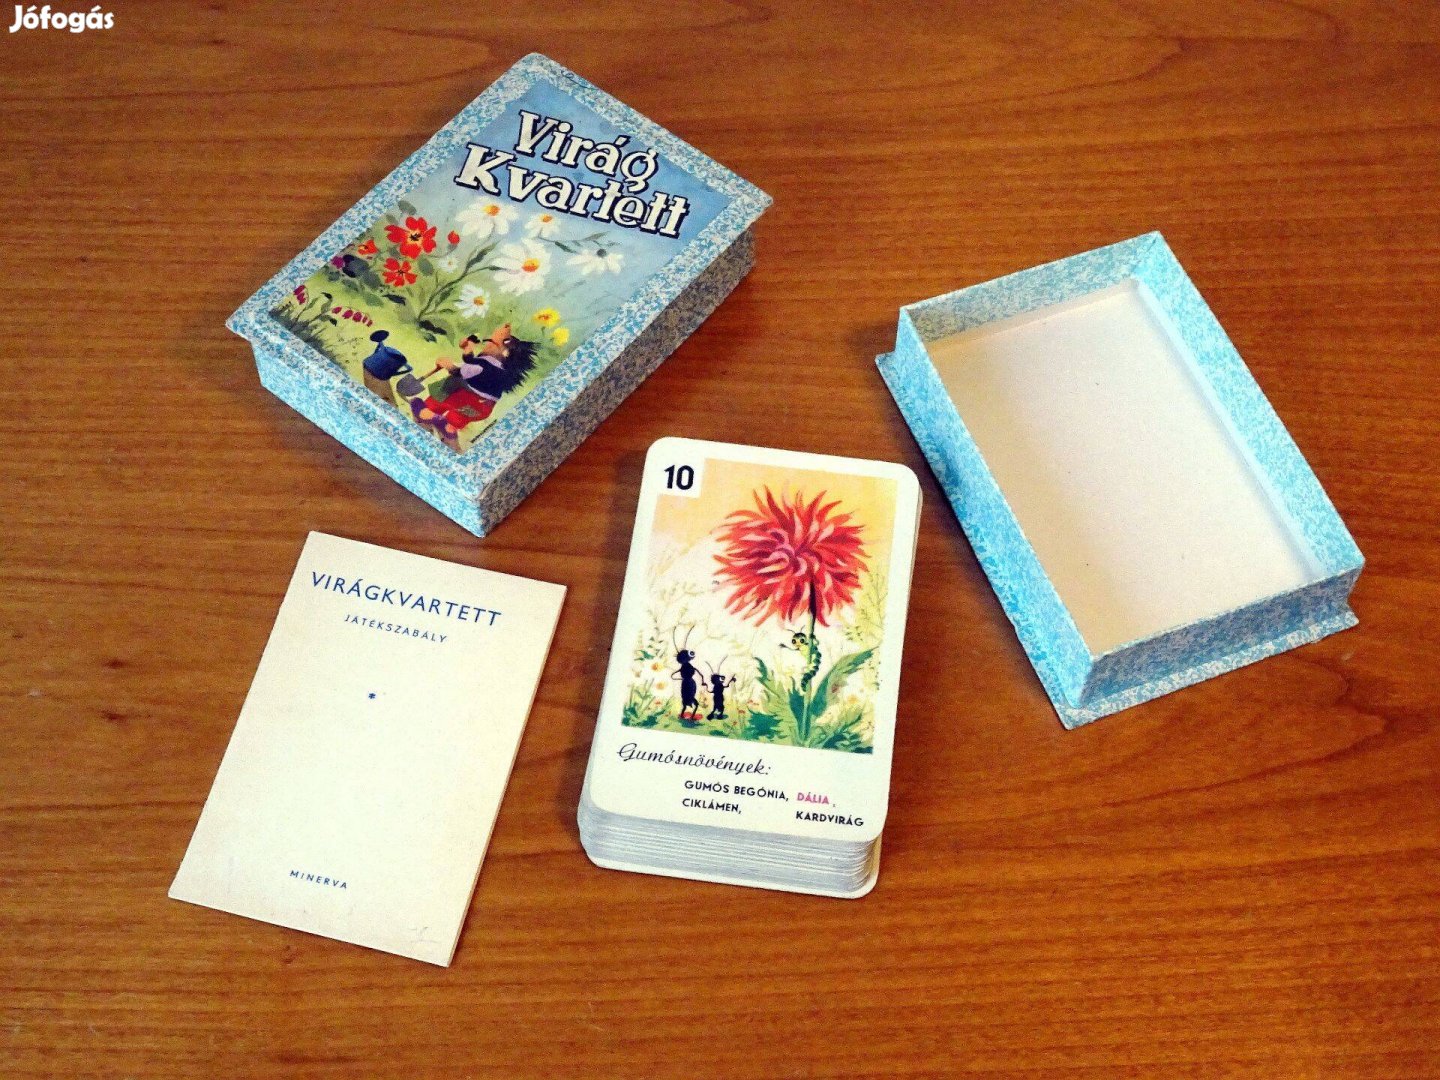 Virág kvartett játékkártya kártya hiánytalan 40 db